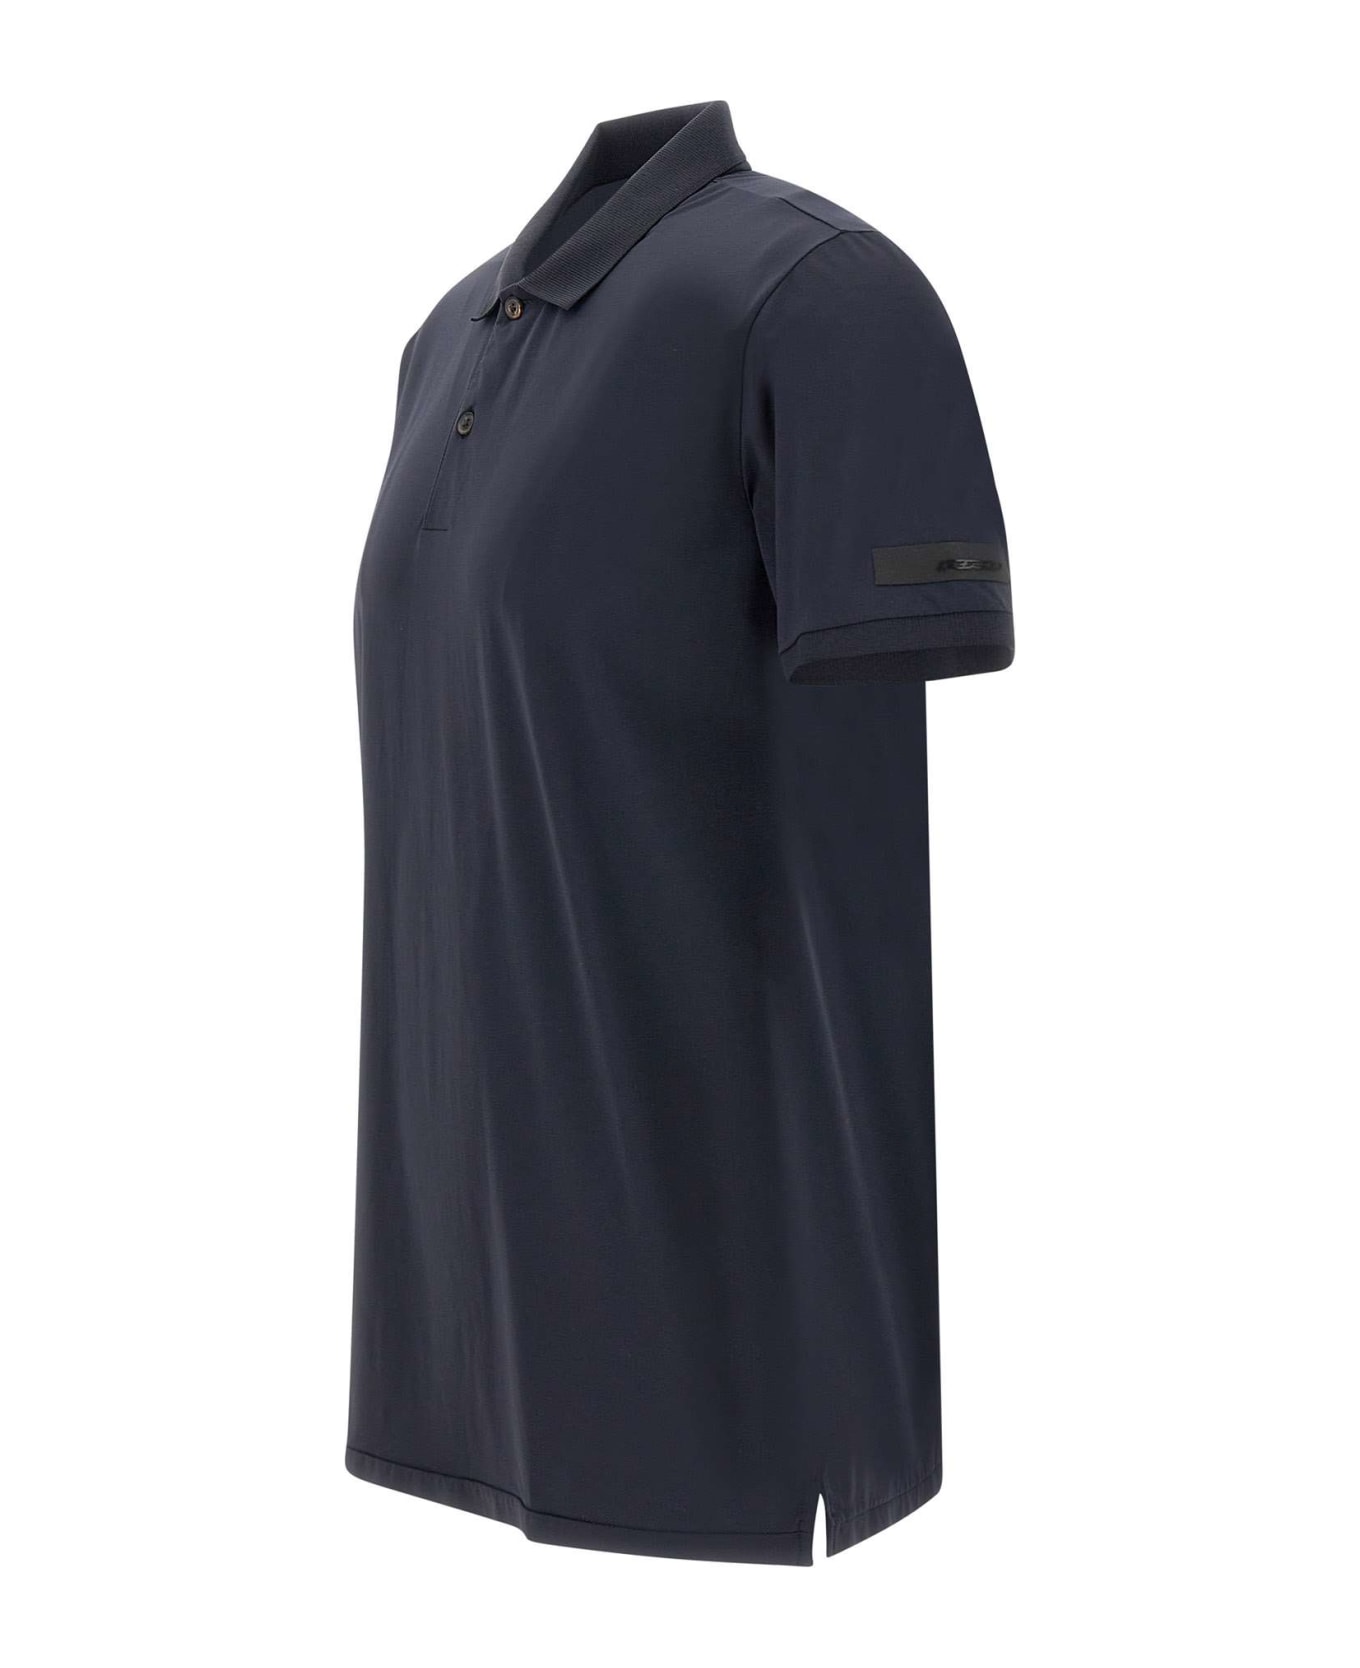 RRD - Roberto Ricci Design "gdy" Cotton Oxford Polo Shirt - BLUE